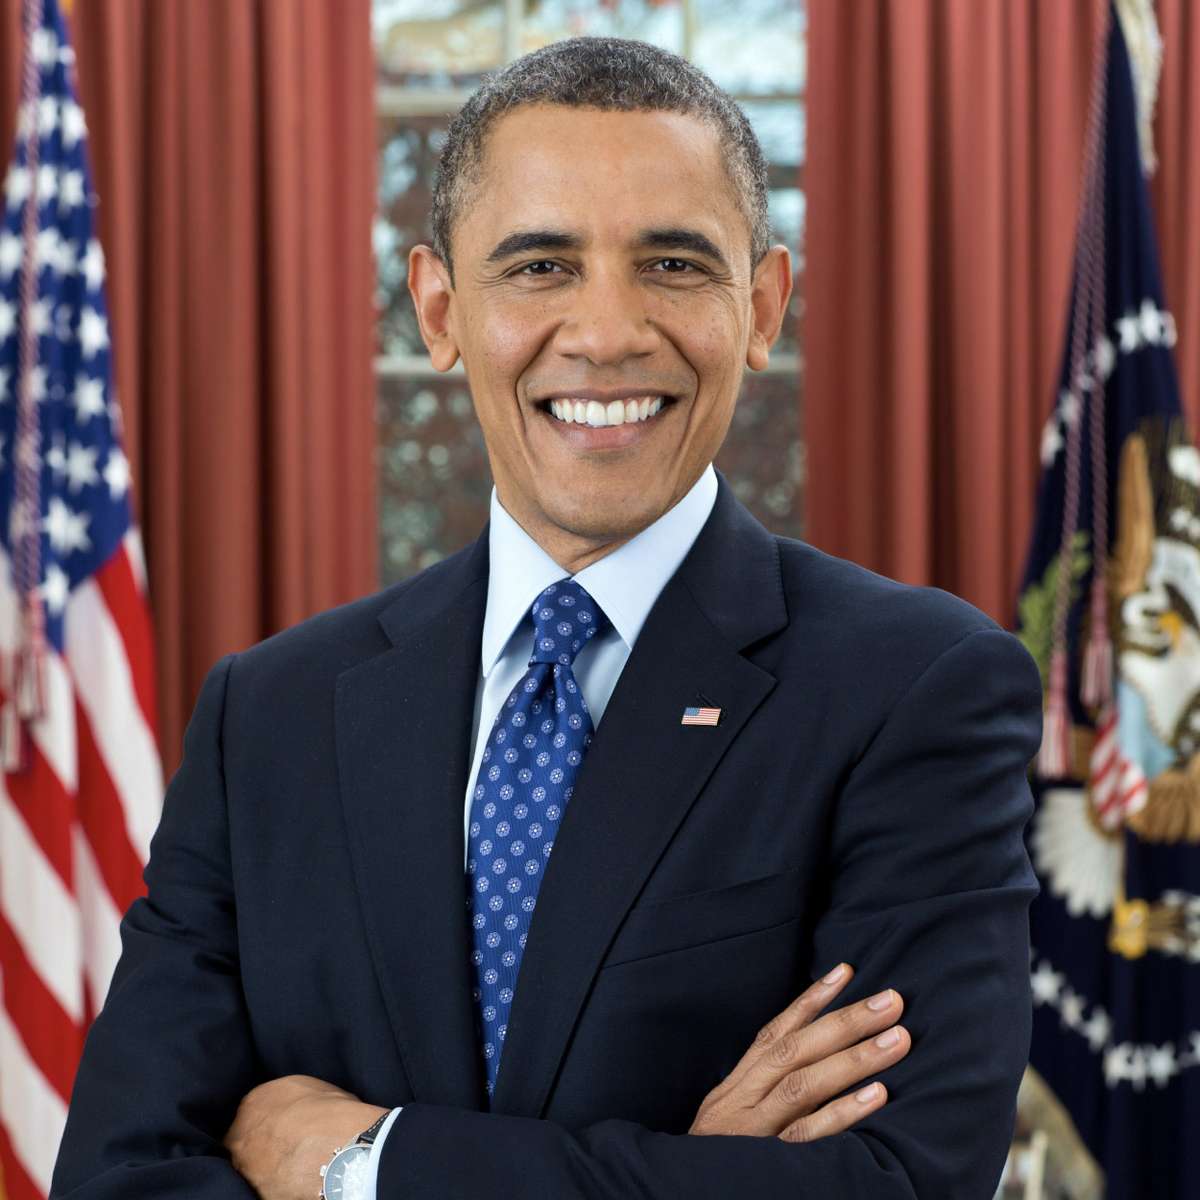 Barack Obama USQ puzzle online from photo